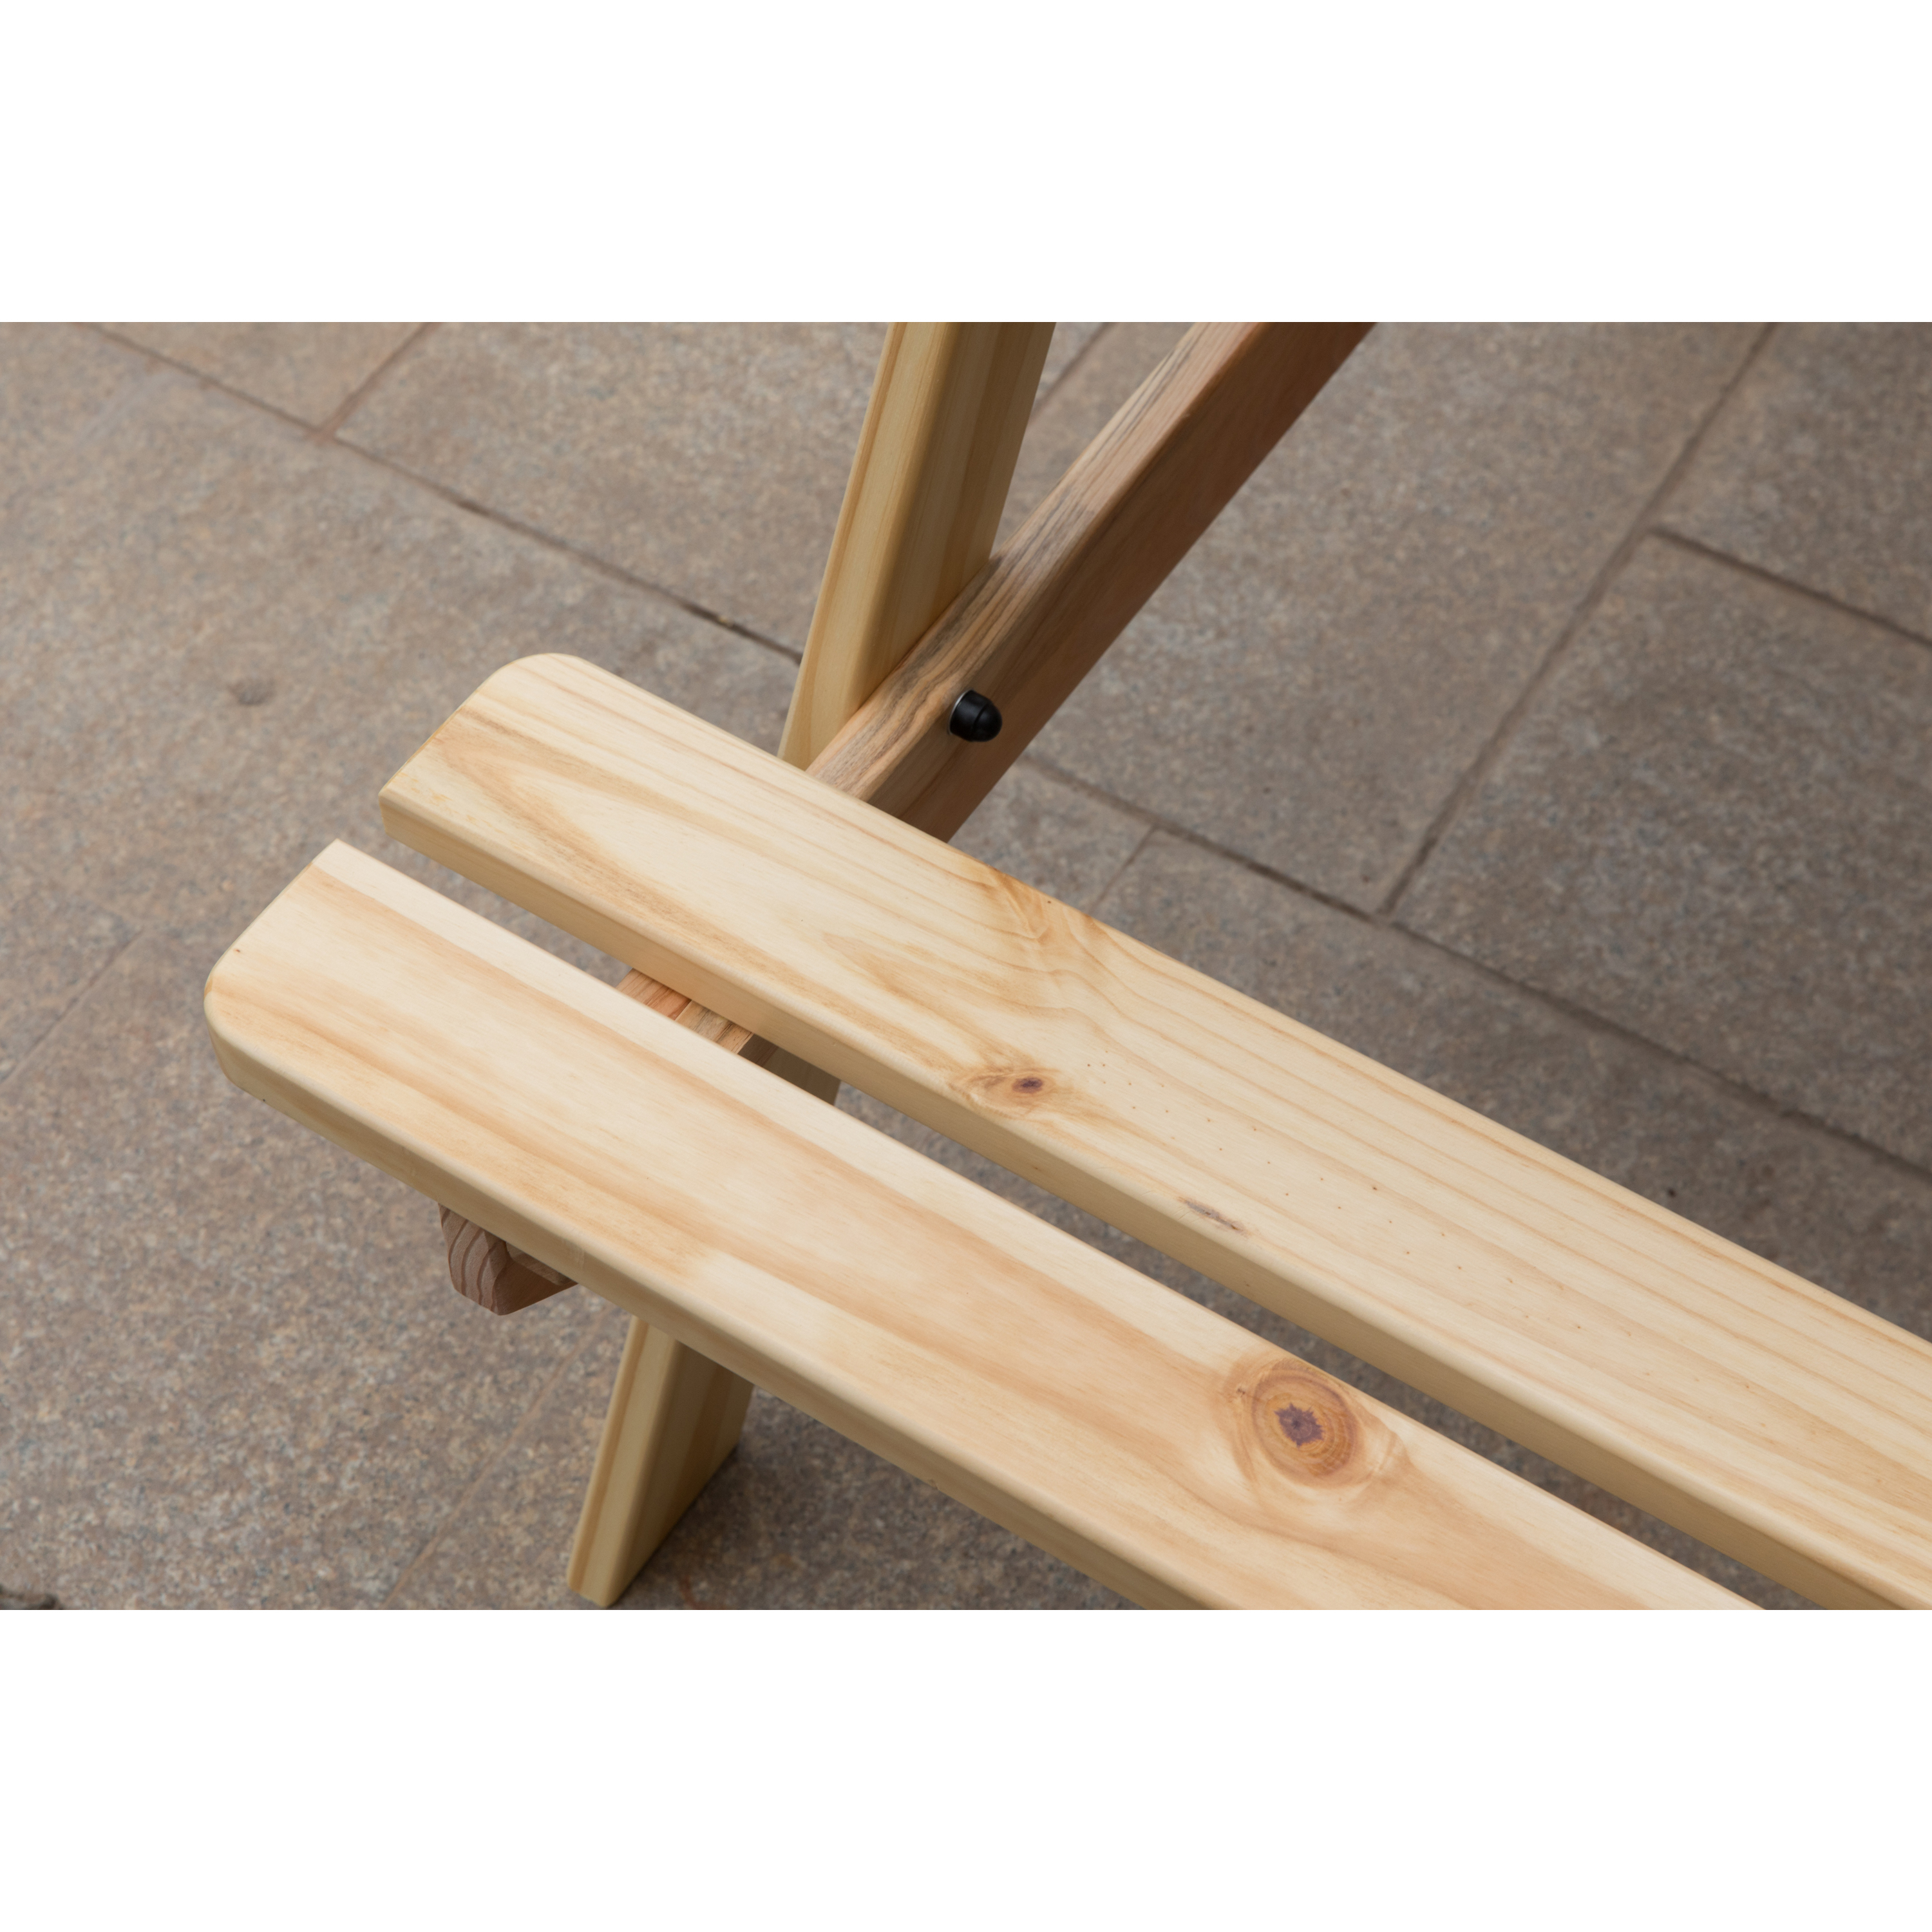 A-Frame Outdoor Wooden Patio Deck Garden Picnic Table - image 4 of 10